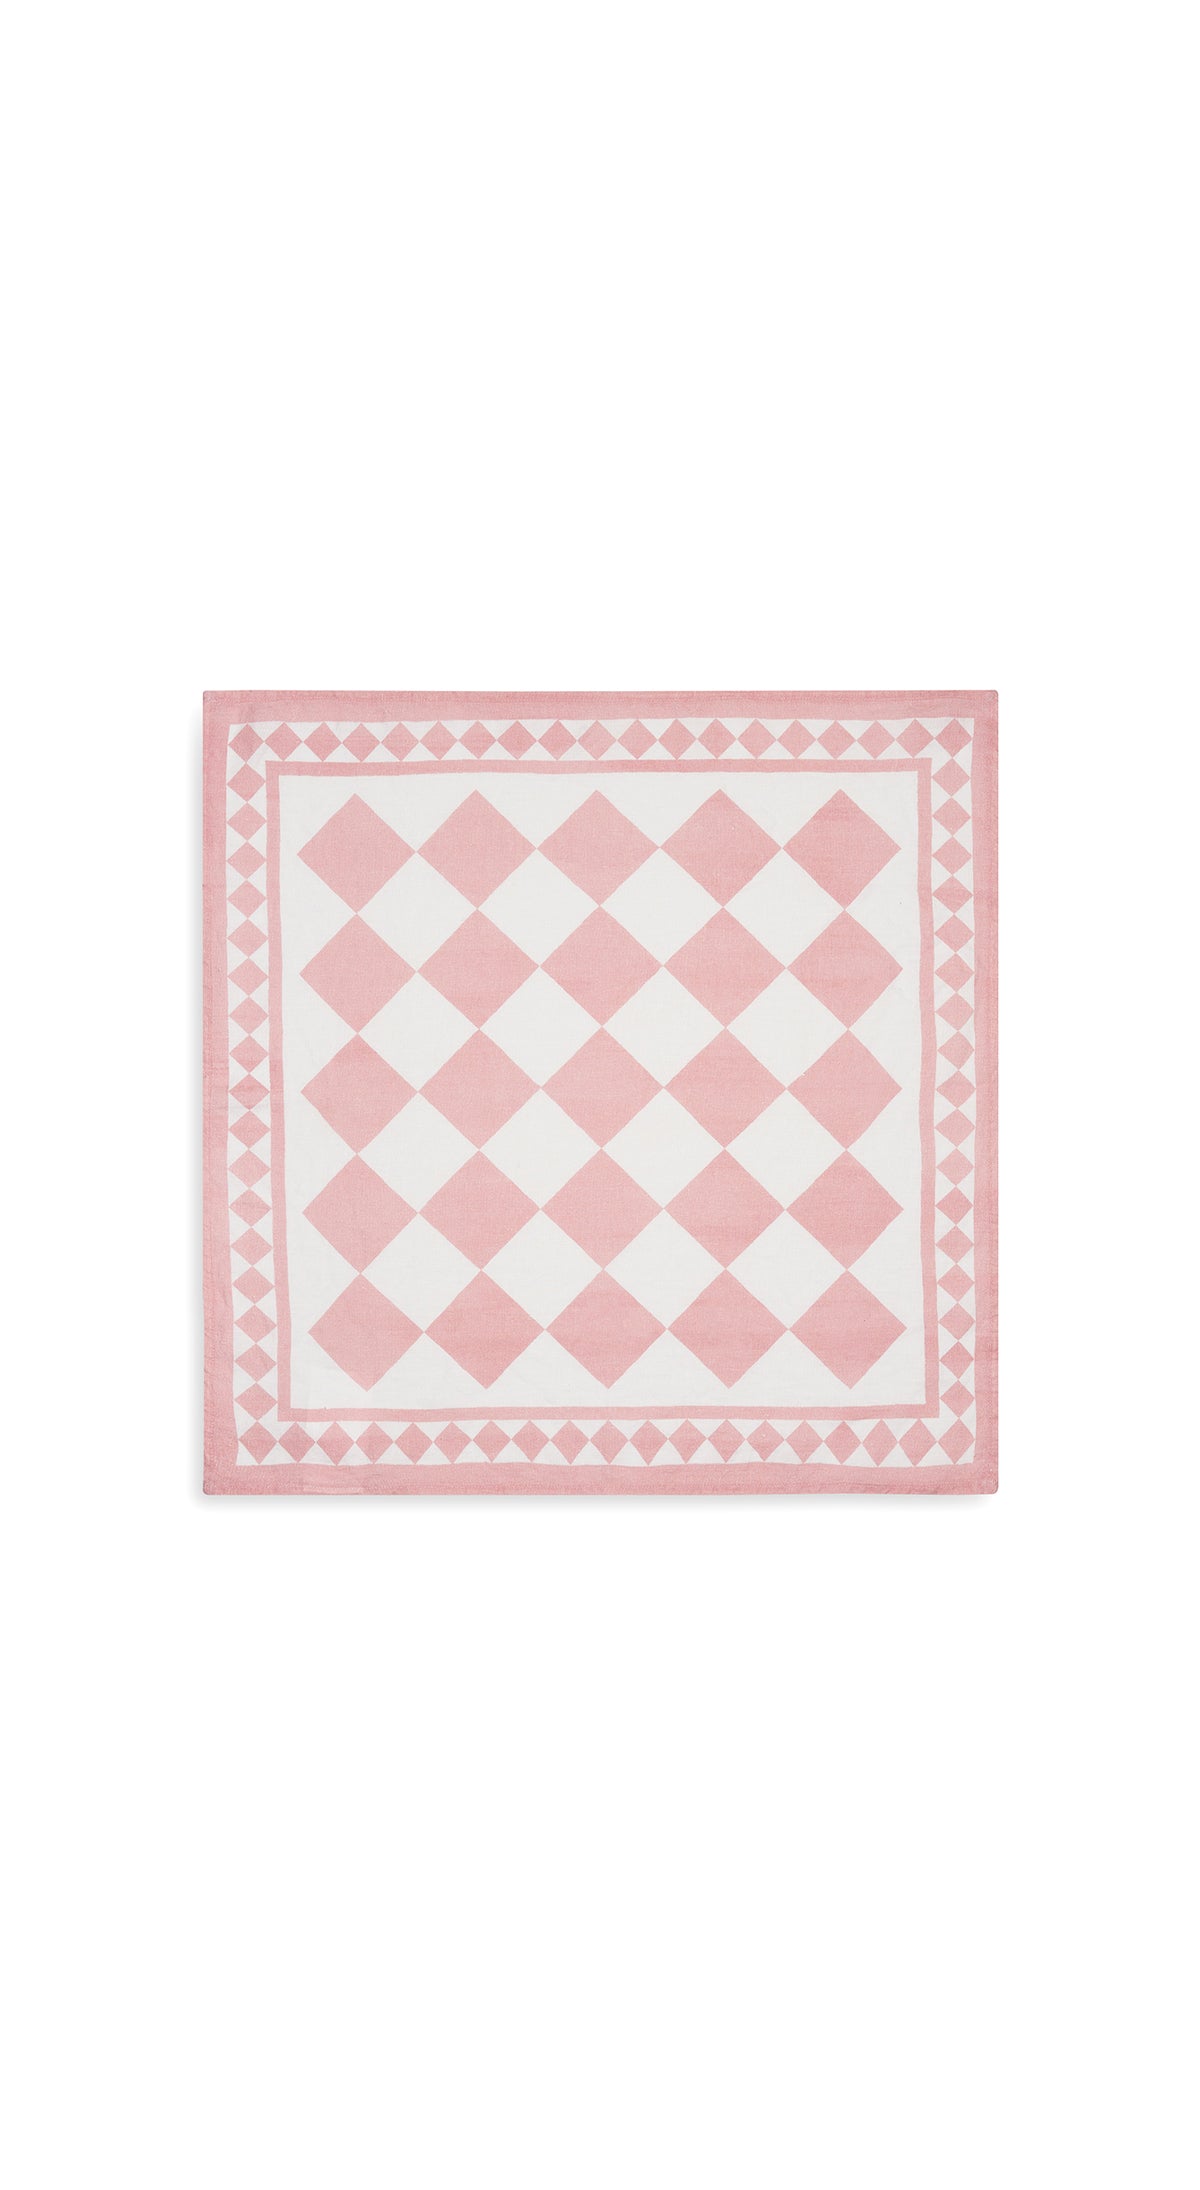 "Pink Check" Summerill & Bishop x Claridge's Linen Napkin, 50x50cm